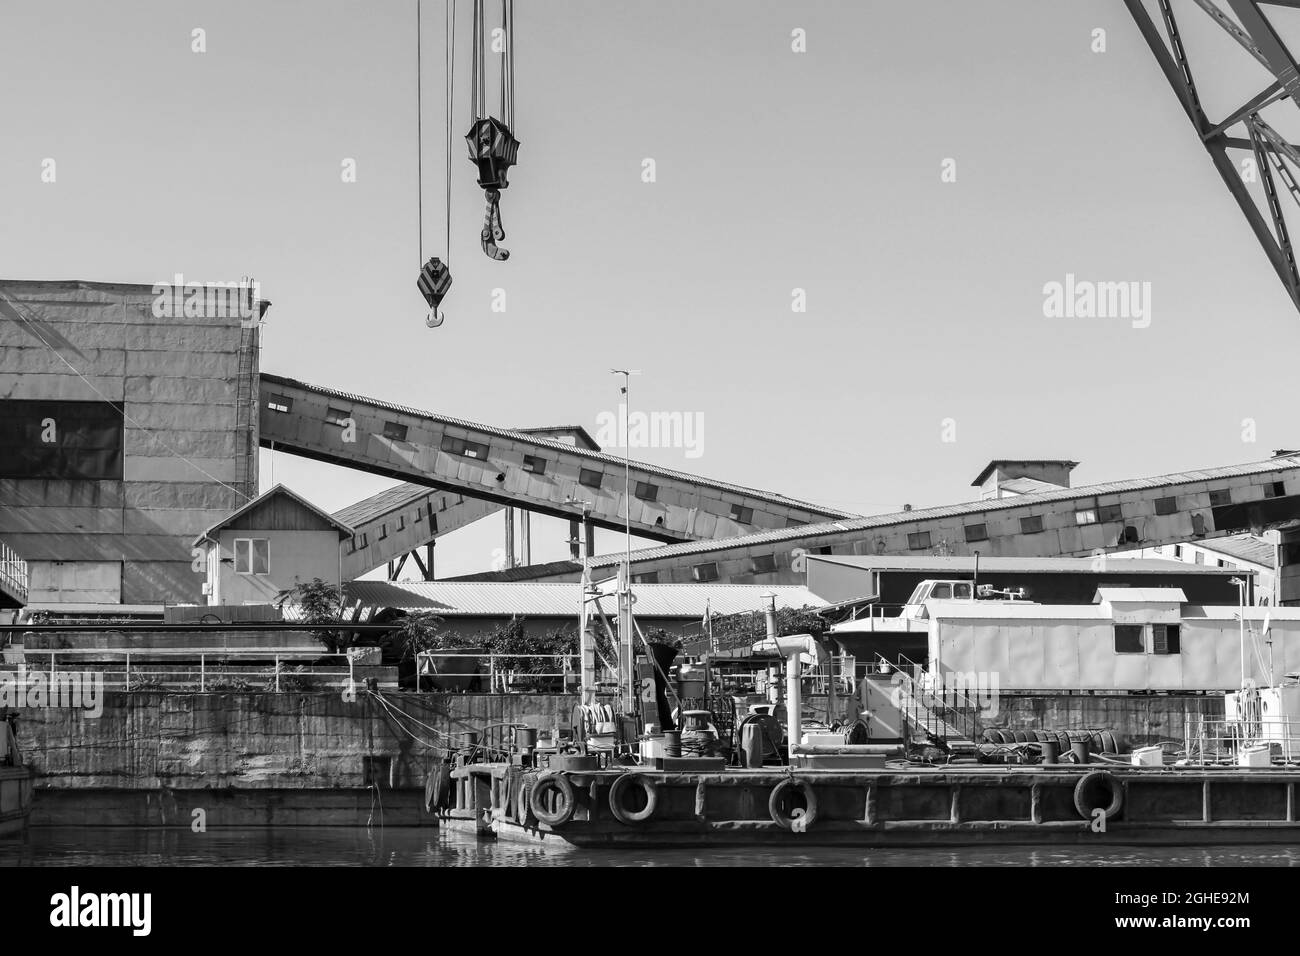 Port industriel, photo noir et blanc avec grues et matériel de chargement. Port de la ruse, côte du Danube, Bulgarie Banque D'Images